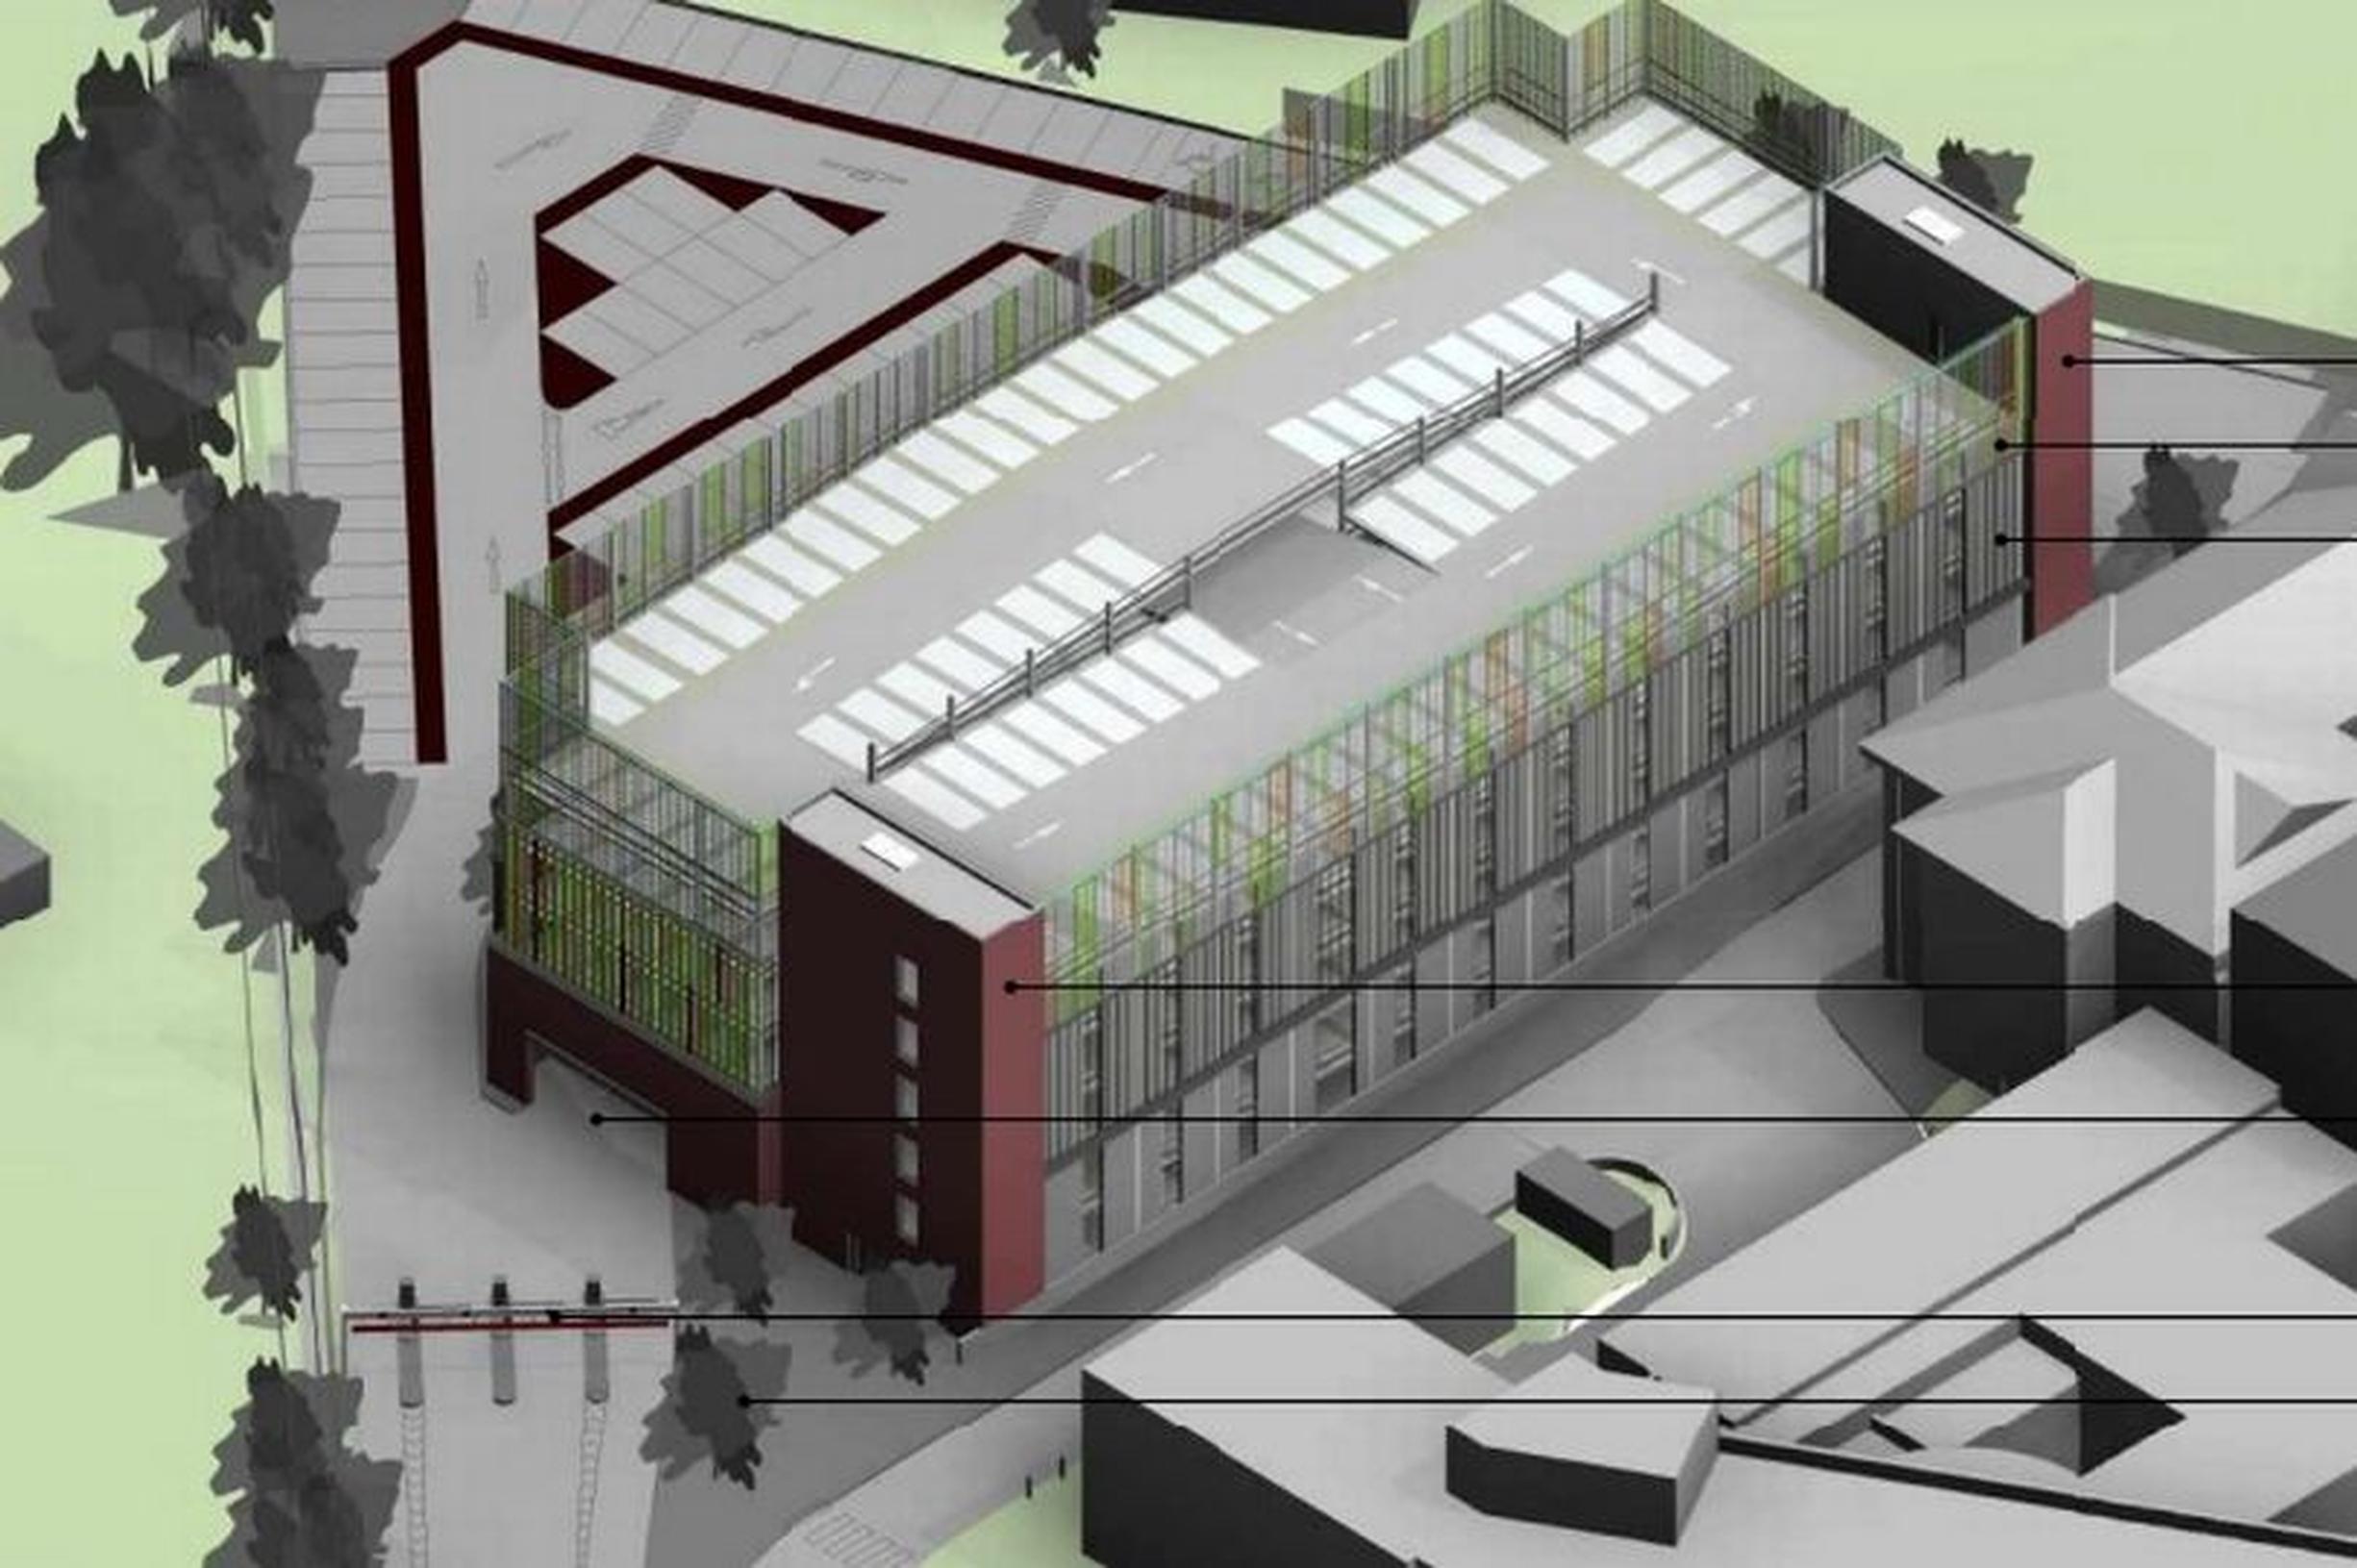 Design for the car park at Epsom General Hospital